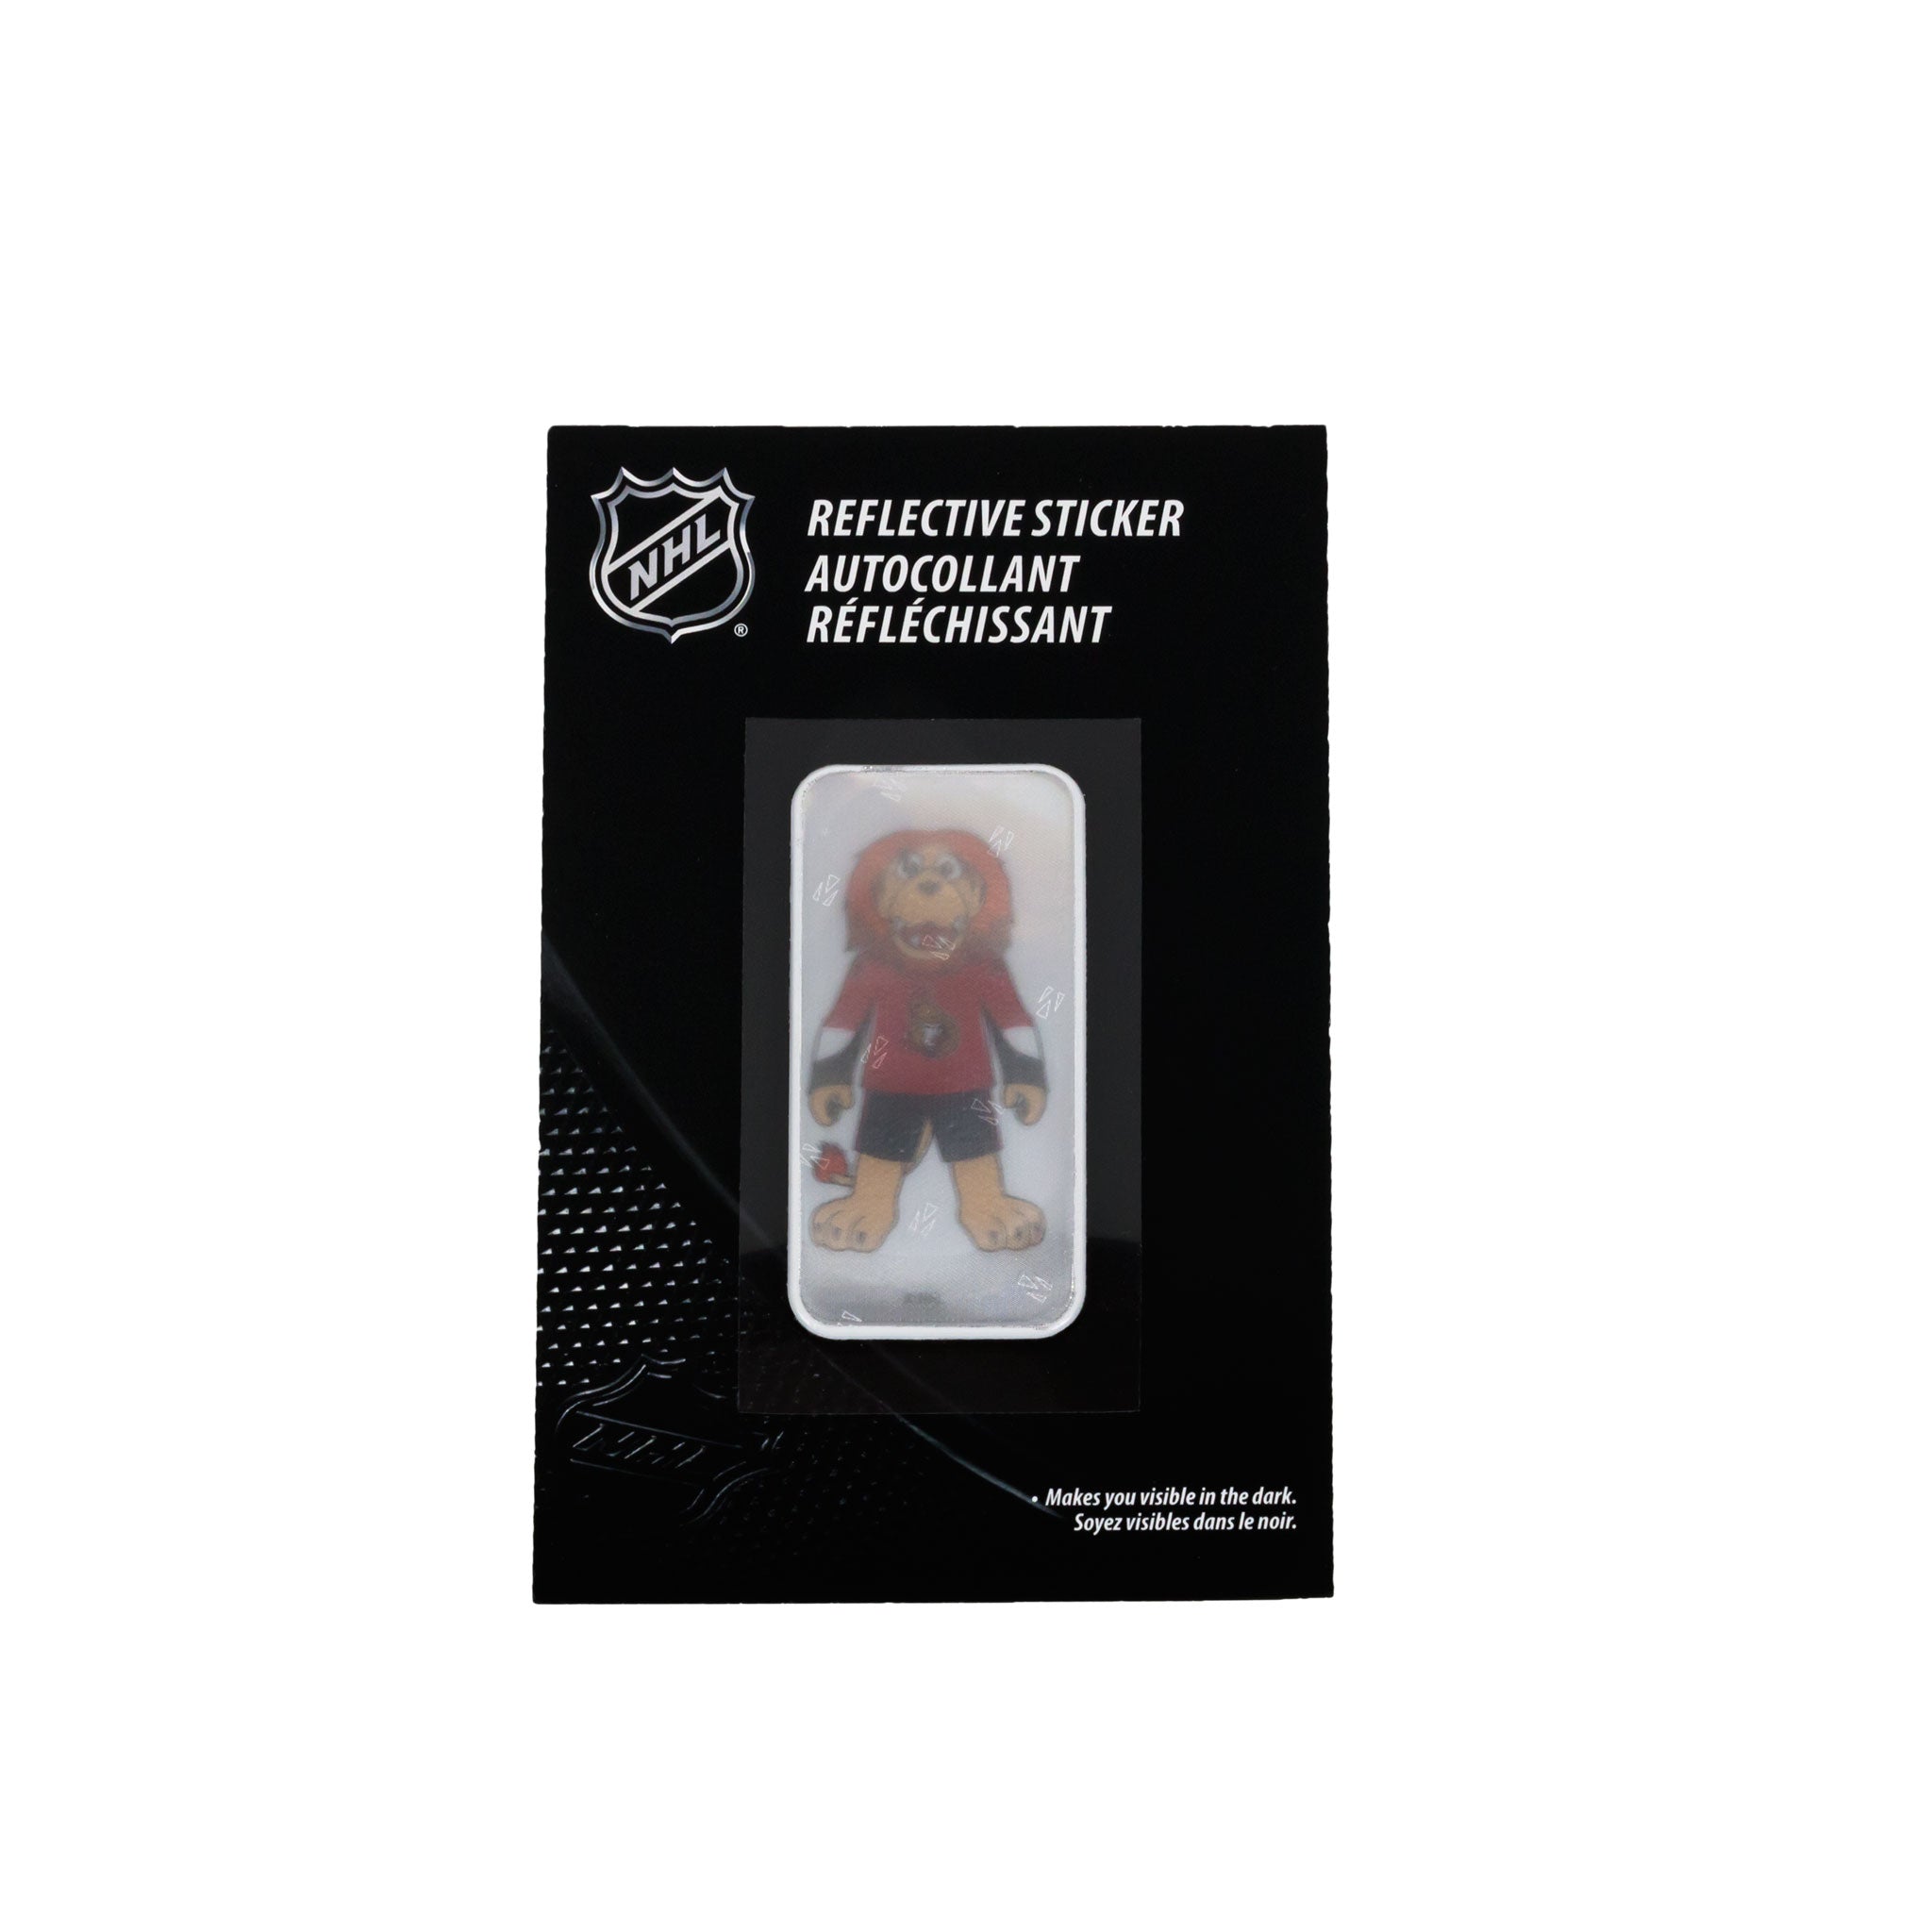 Ottawa_Senators_Mascot_Sticker_Package